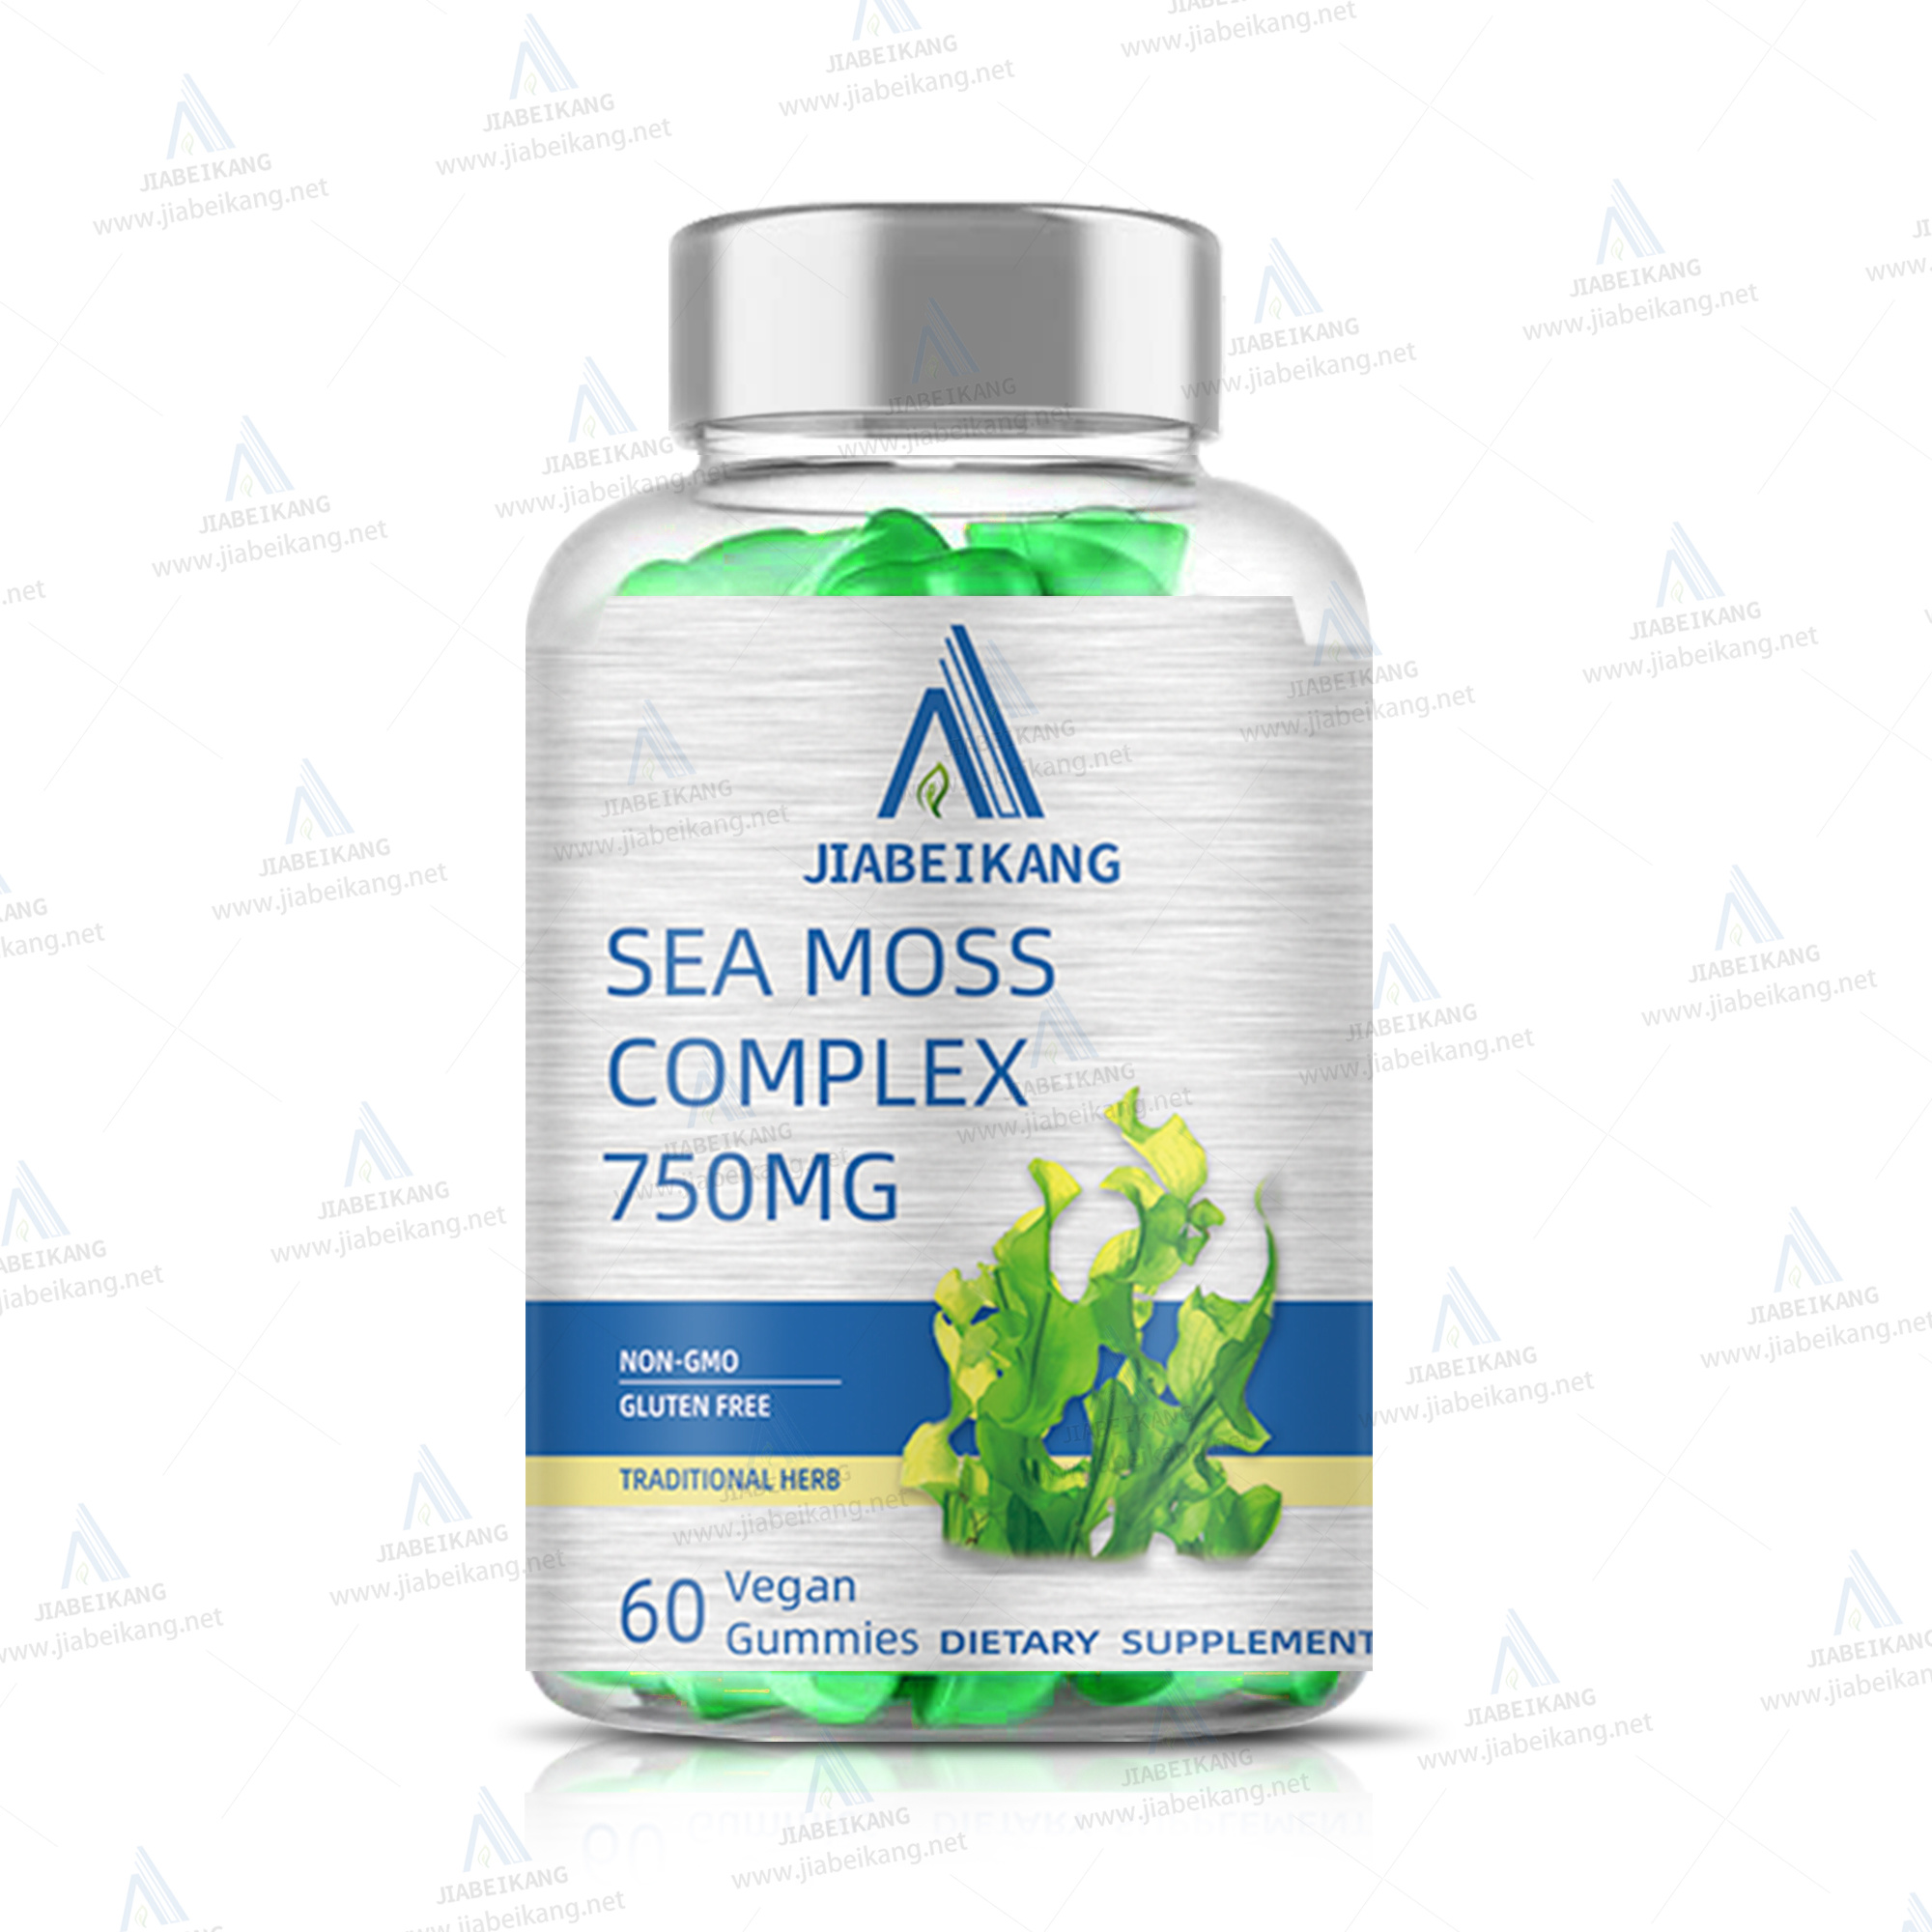 Sea Moss 7000mg, Black Seed Oil 4000mg, Ashwagandha 2000mg, Ginger & Shilajit 9000mg, Rhodiola Rosea 1000mg, Panax Ginseng 1500mg, All in 1 Supplements (1 Pack)